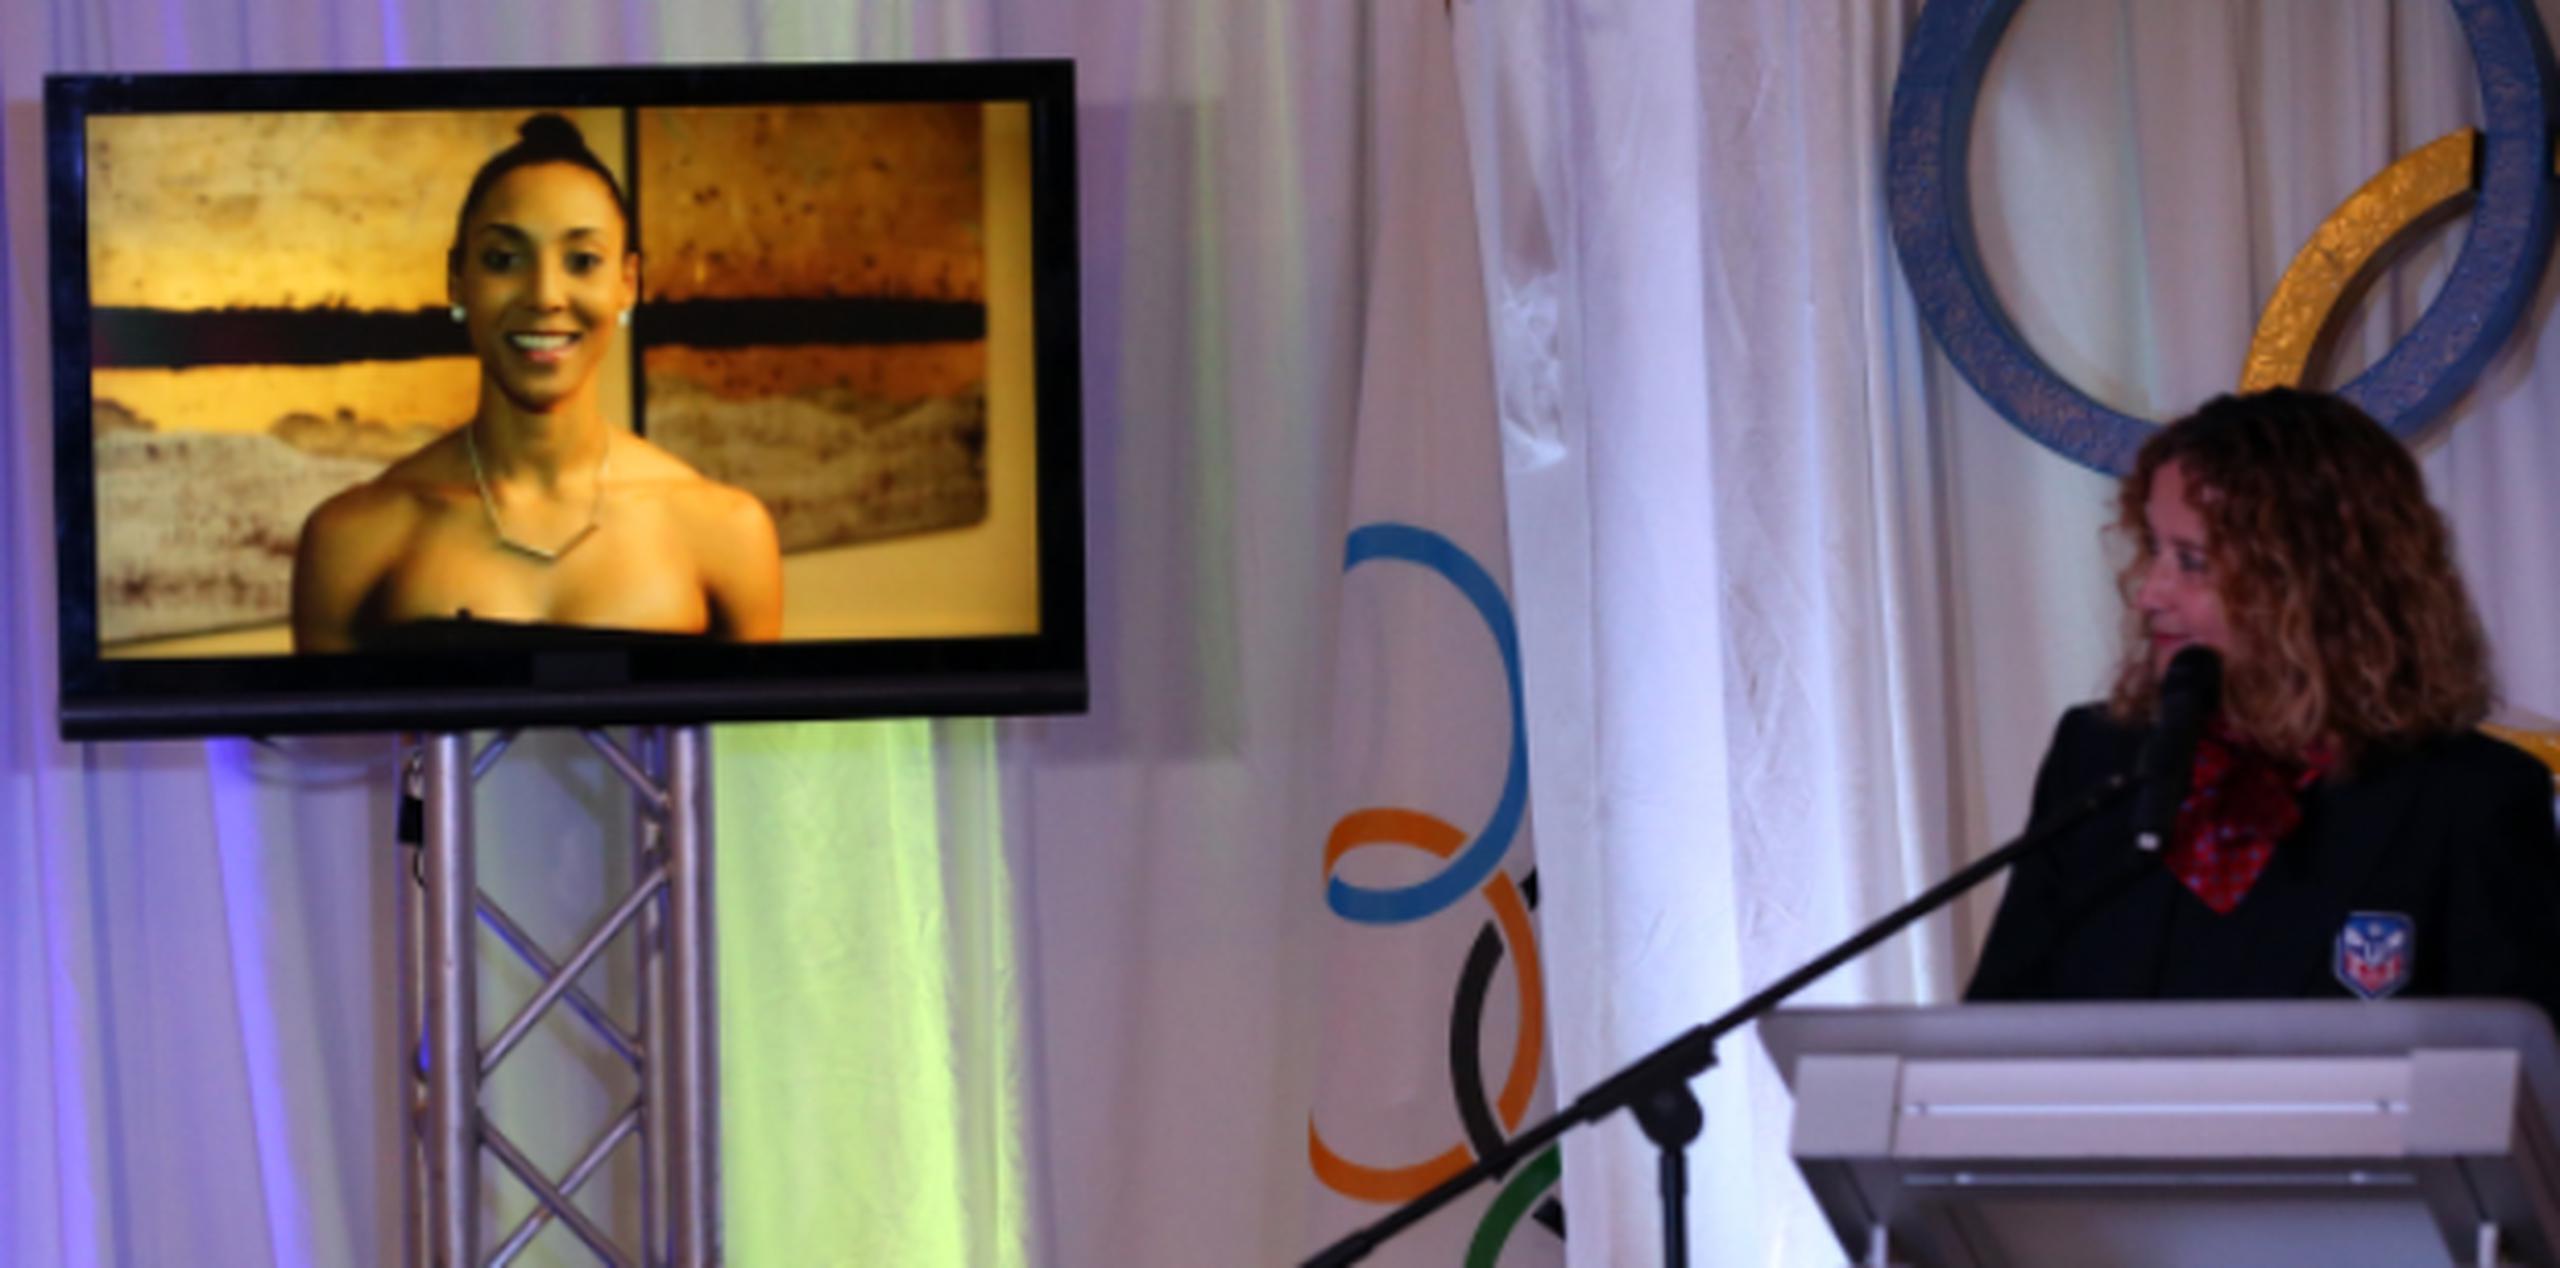 La presidenta del Comité Olímpico de Puerto Rico (COPUR) Sara Rosario (der.) observa el vídeo mensaje enviado por Aury Cruz durante la presentación de la delegación boricua celebrada ayer en la Casa Olímpica. (jose.candelaria@gfrmedia.com)